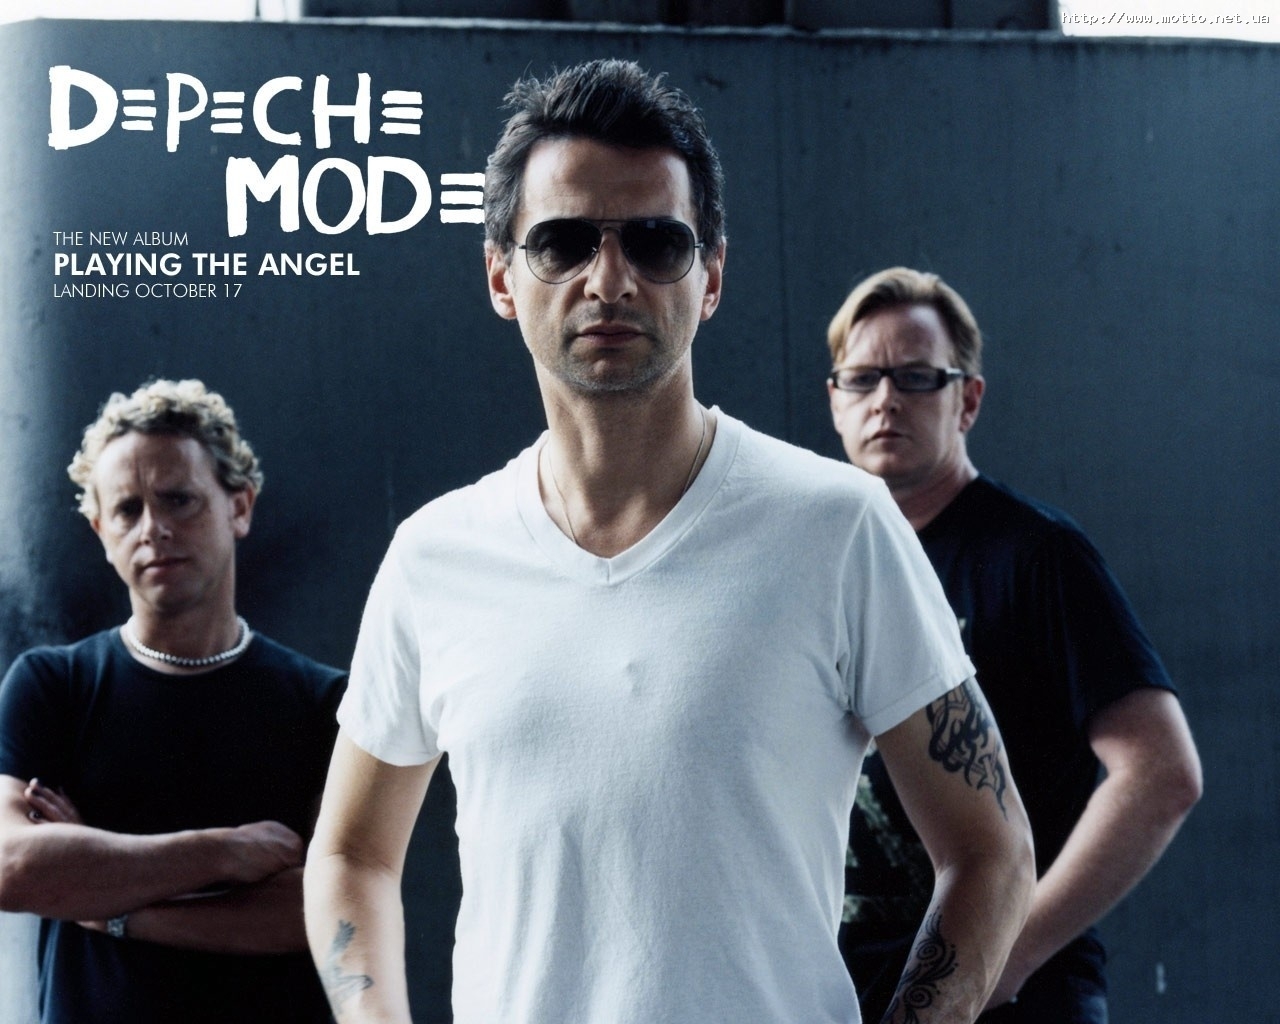 免费下载人, 艺术家, 男性, Depeche Mode的, 音乐手机壁纸。